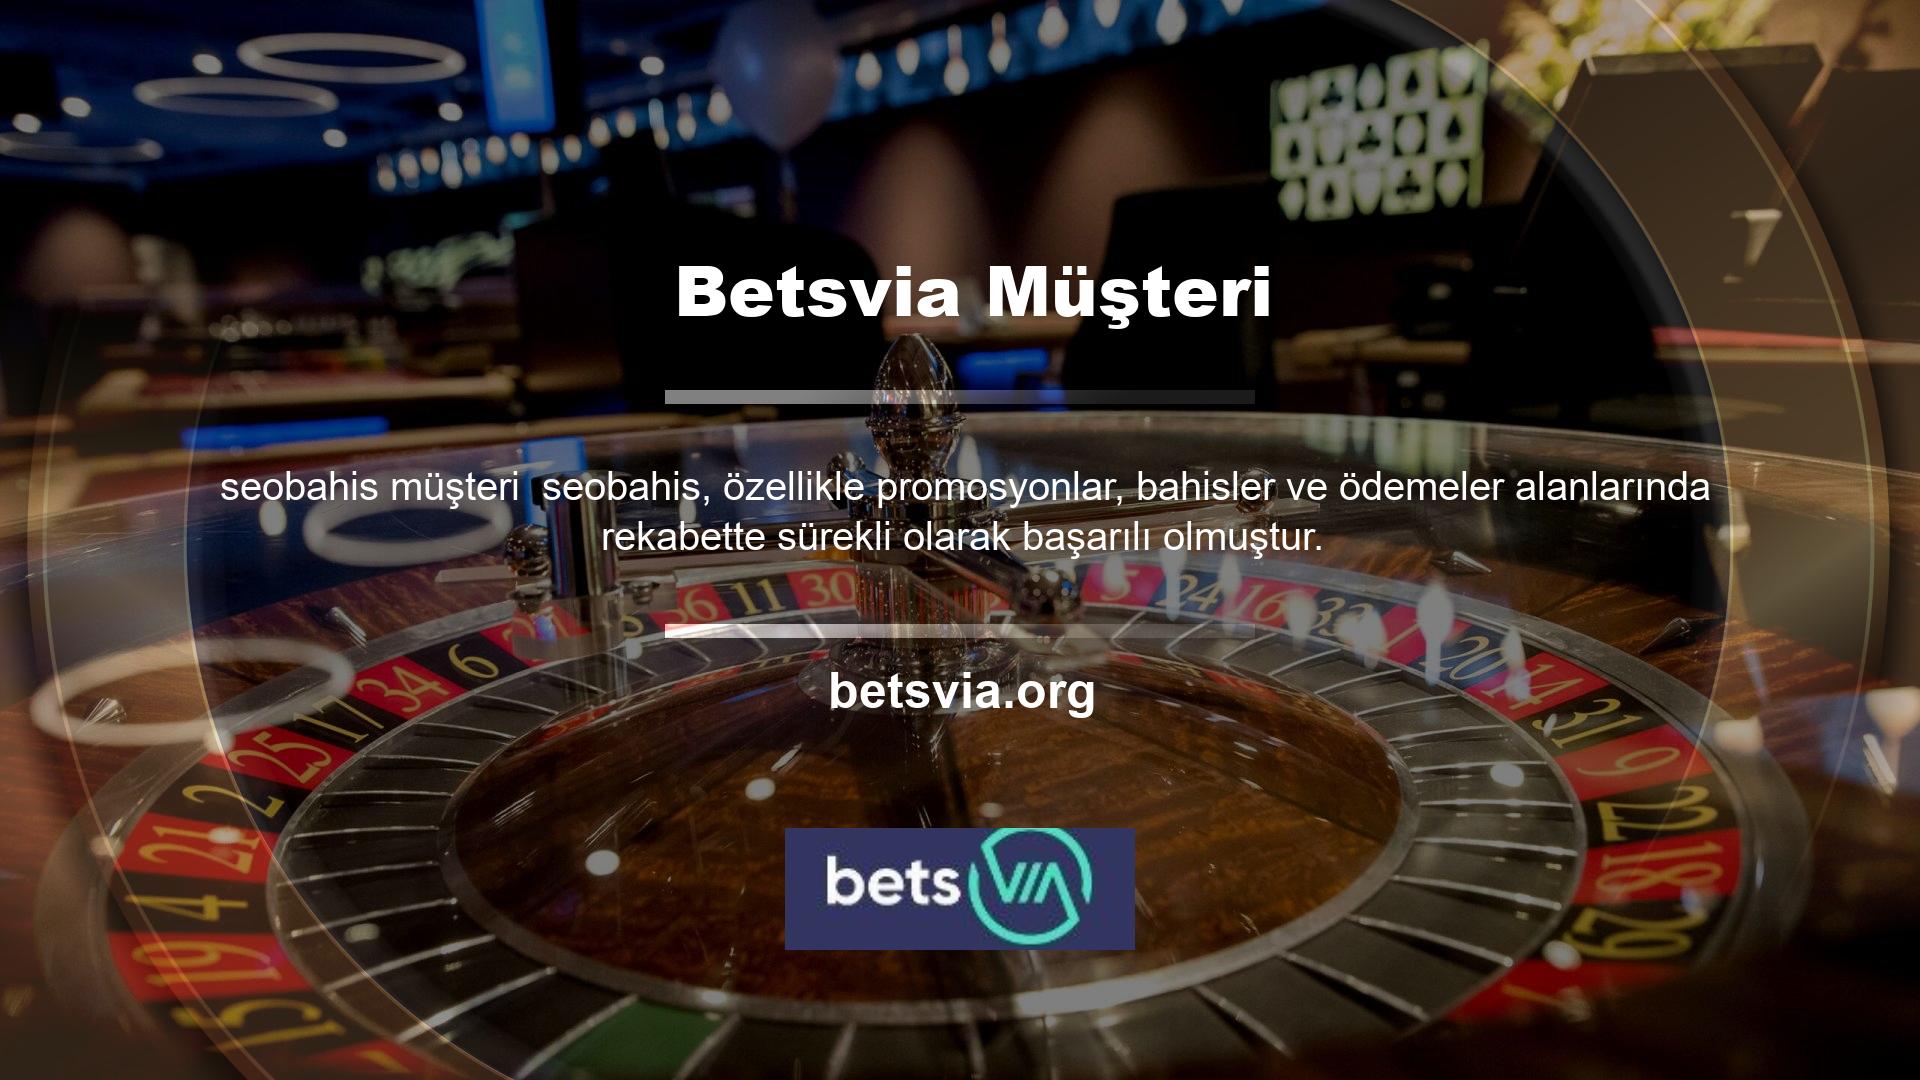 Casino oynamayı seven ve bahis sitelerinin genel kalitesinin farkında olan kişiler, Betsvia ortalamanın çok üzerinde performans gösteren bir site olduğunu düşünüyor